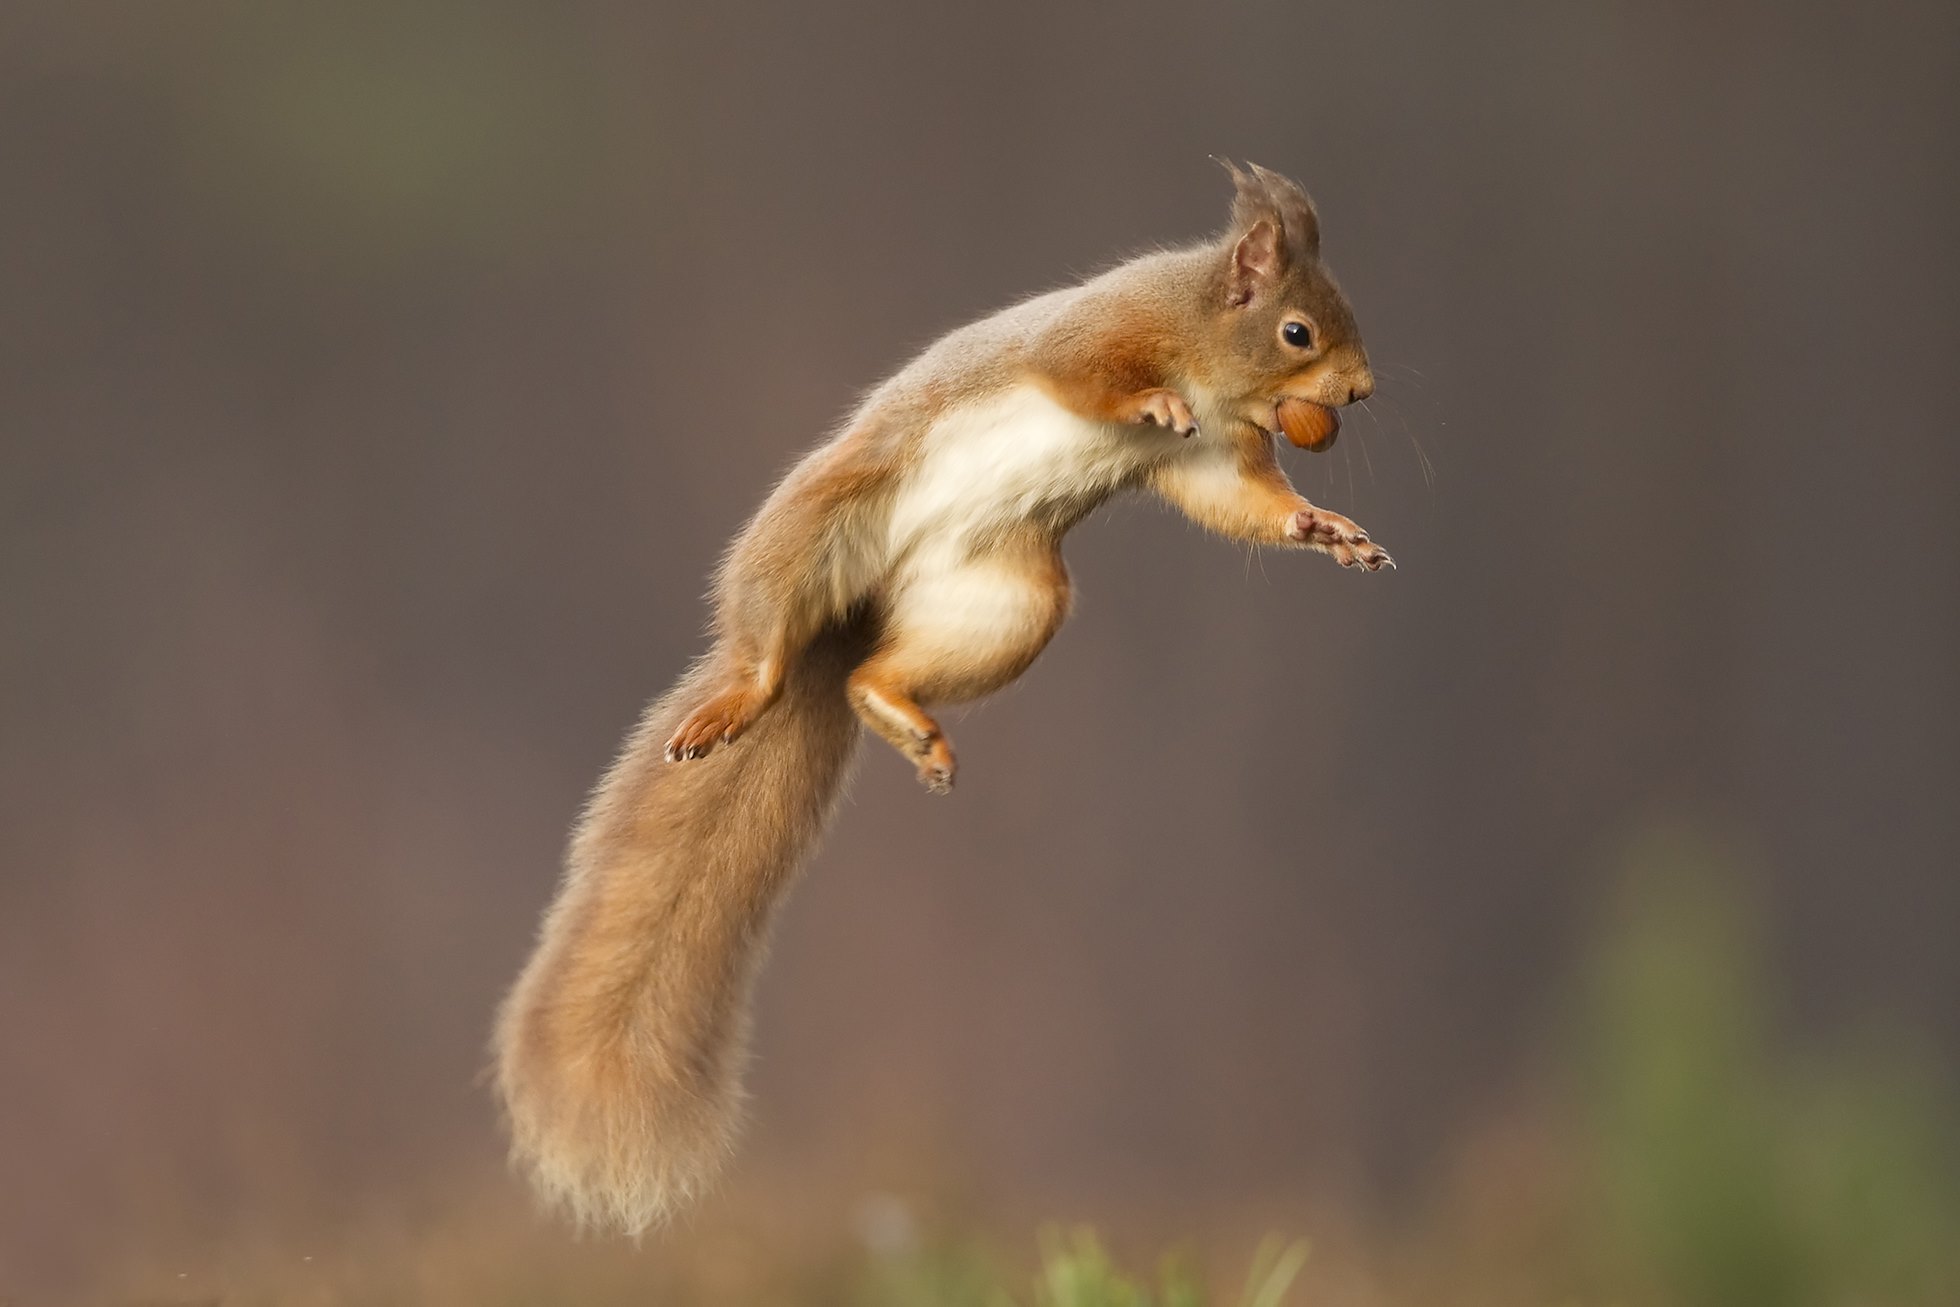 Red squirrel (Sciurus vulgaris) jumping, Cairngorms National Park, Scotland.